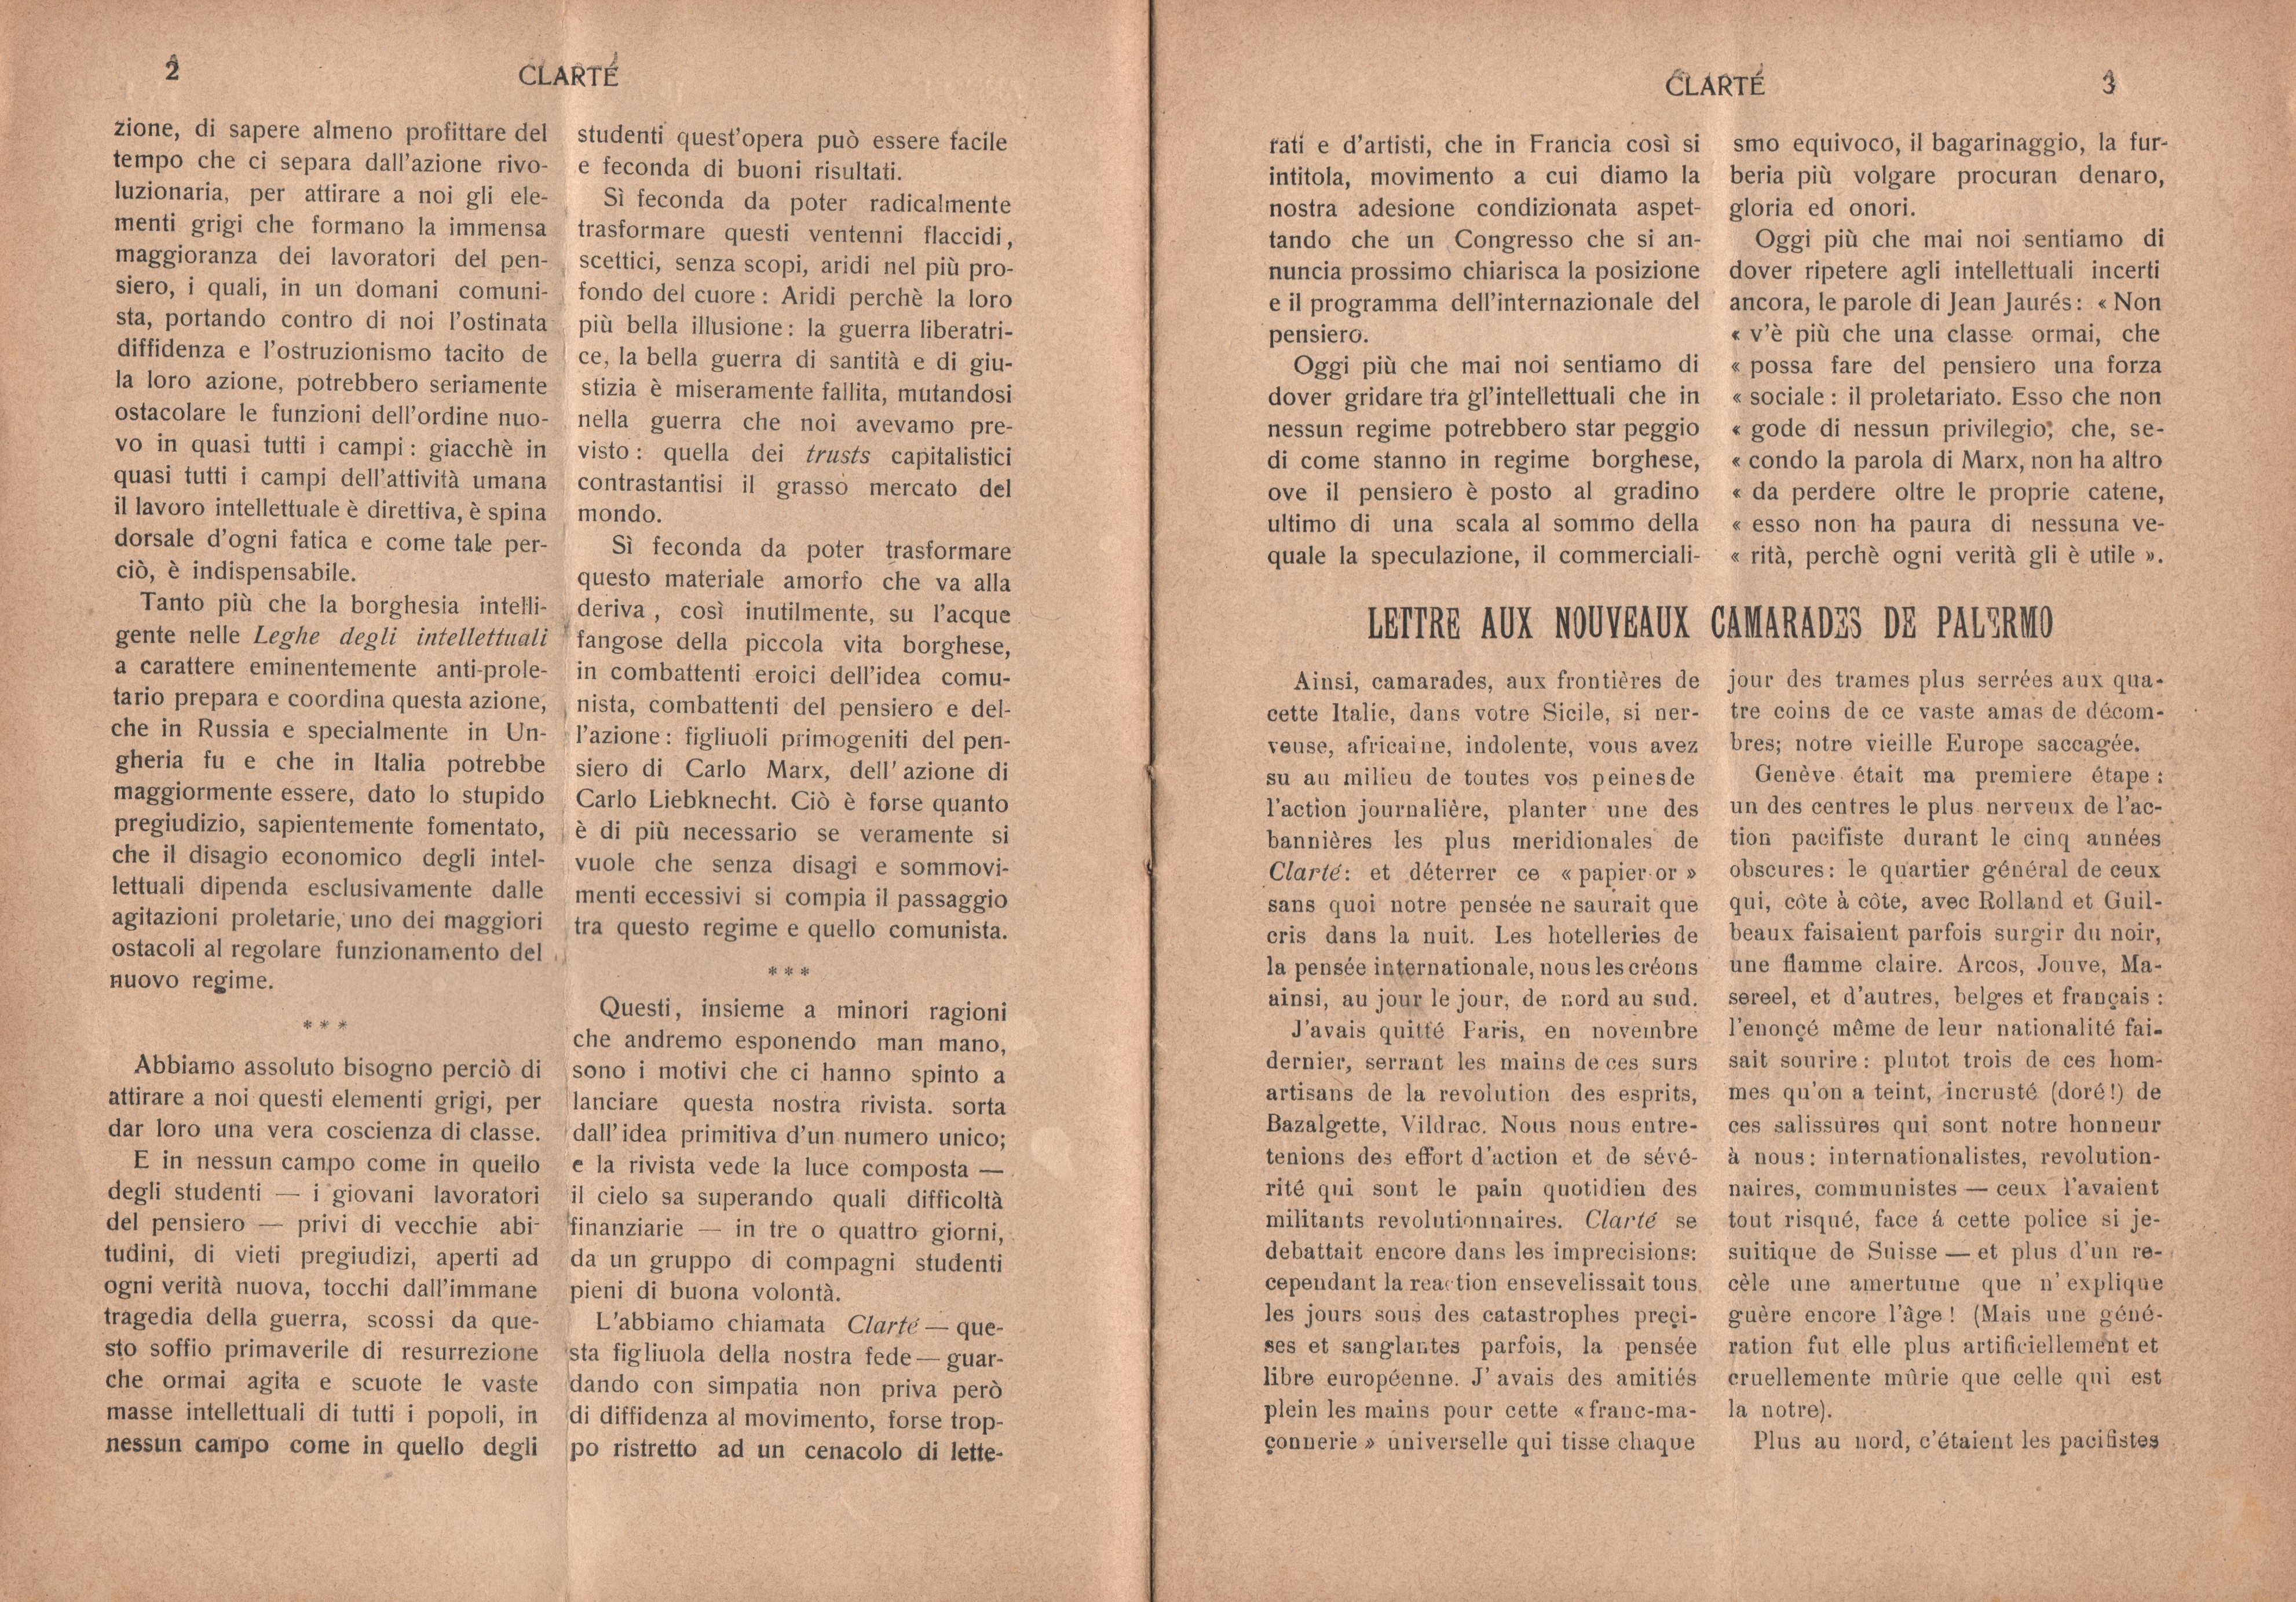 Clarté. Rivista mensile degli studenti comunisti (a. I, n. 1, Palermo, 15 maggio 1920) - pag. 3